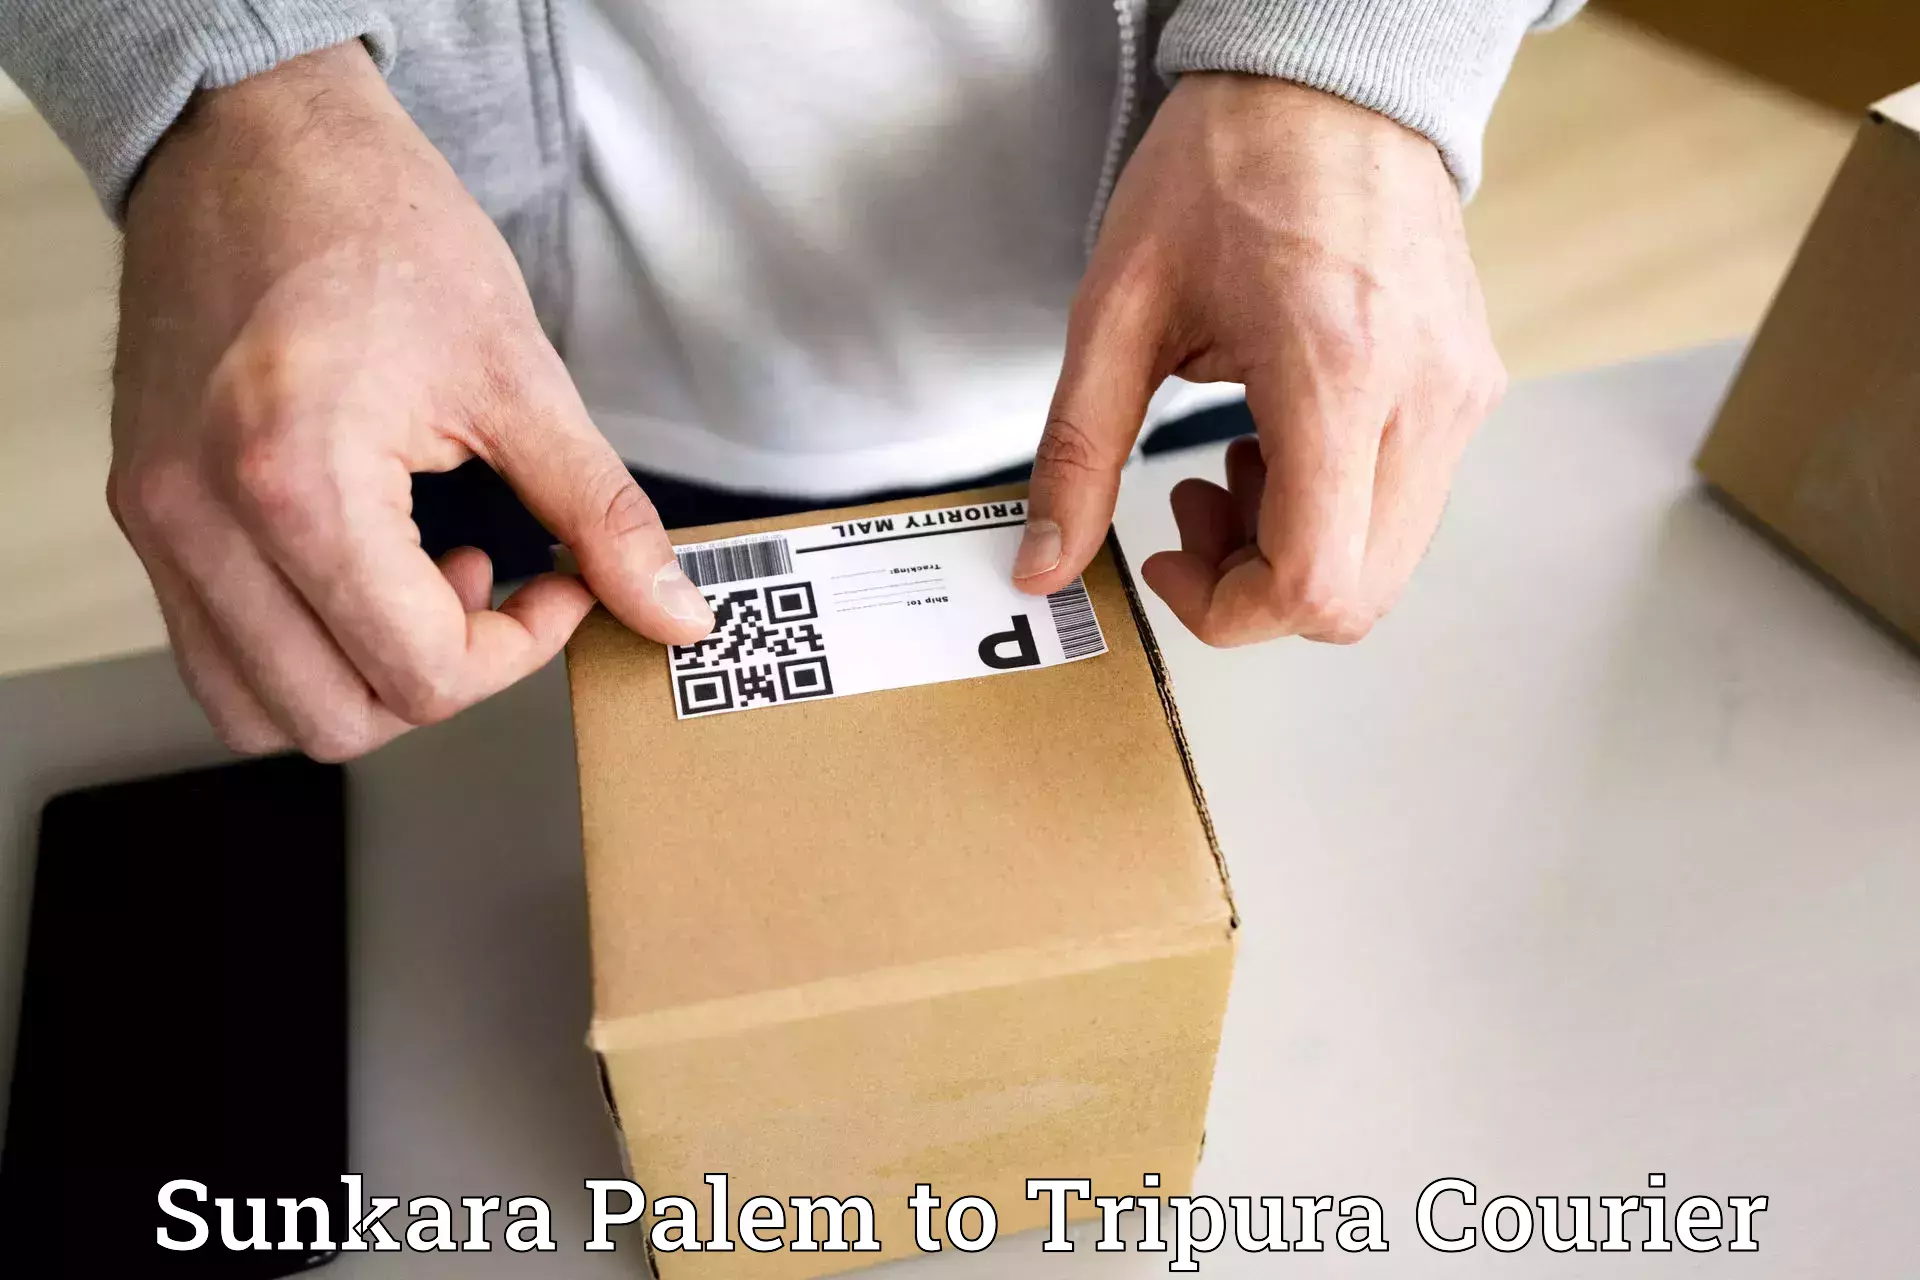 Secure packaging in Sunkara Palem to Dhalai